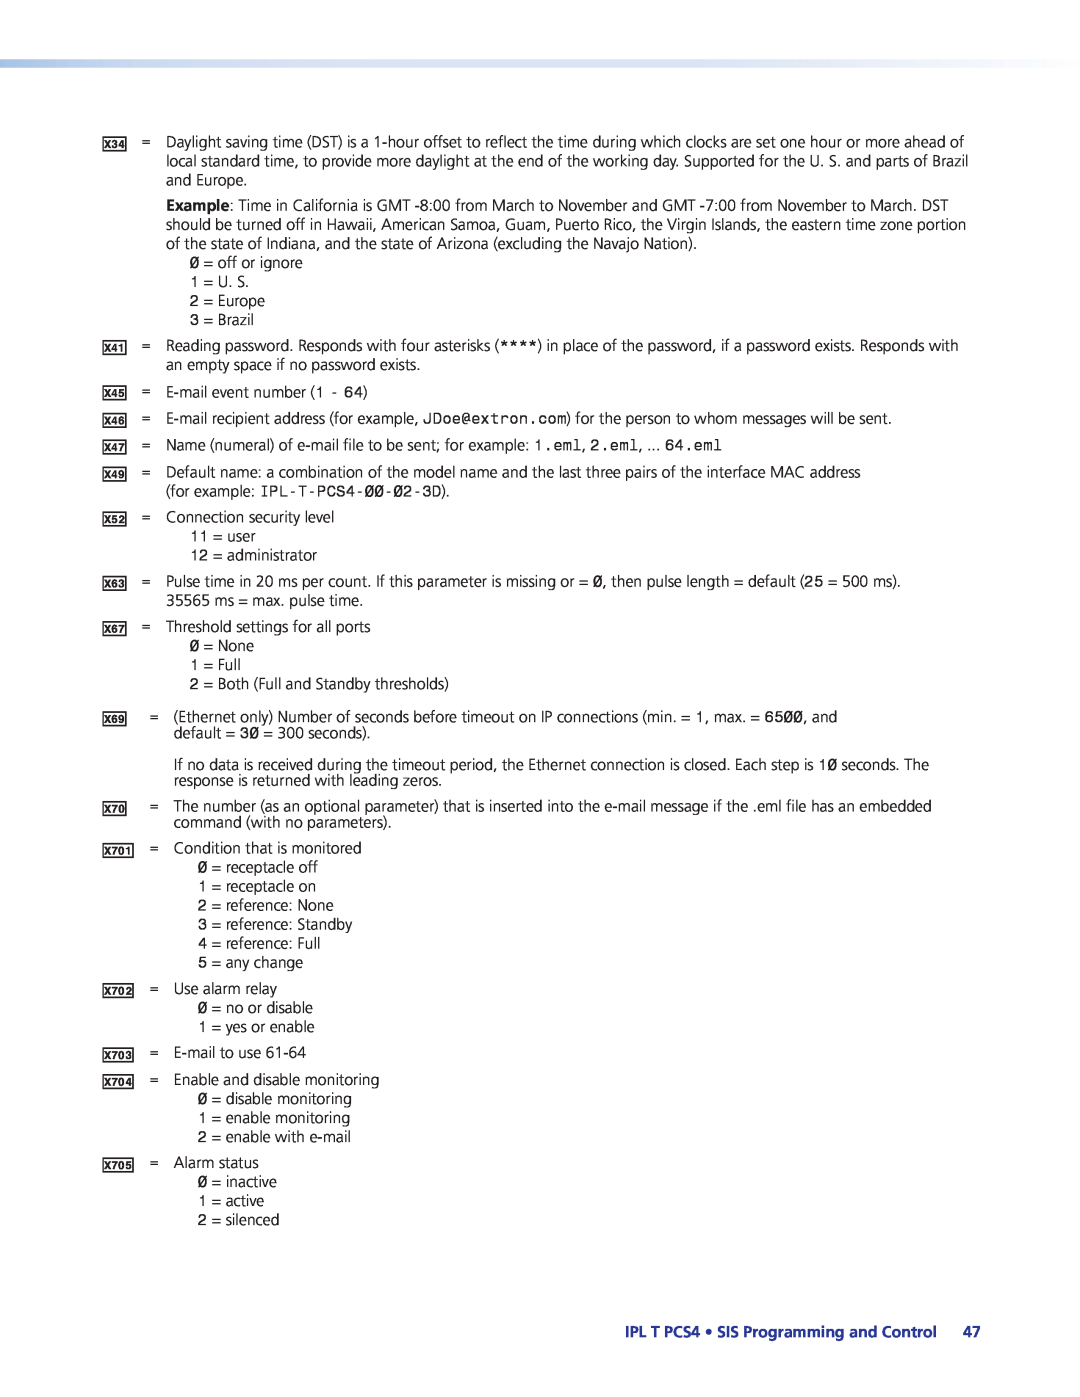 Extron electronic IPL T PCS4i manual for example IPL-T-PCS4-00-02-3D 